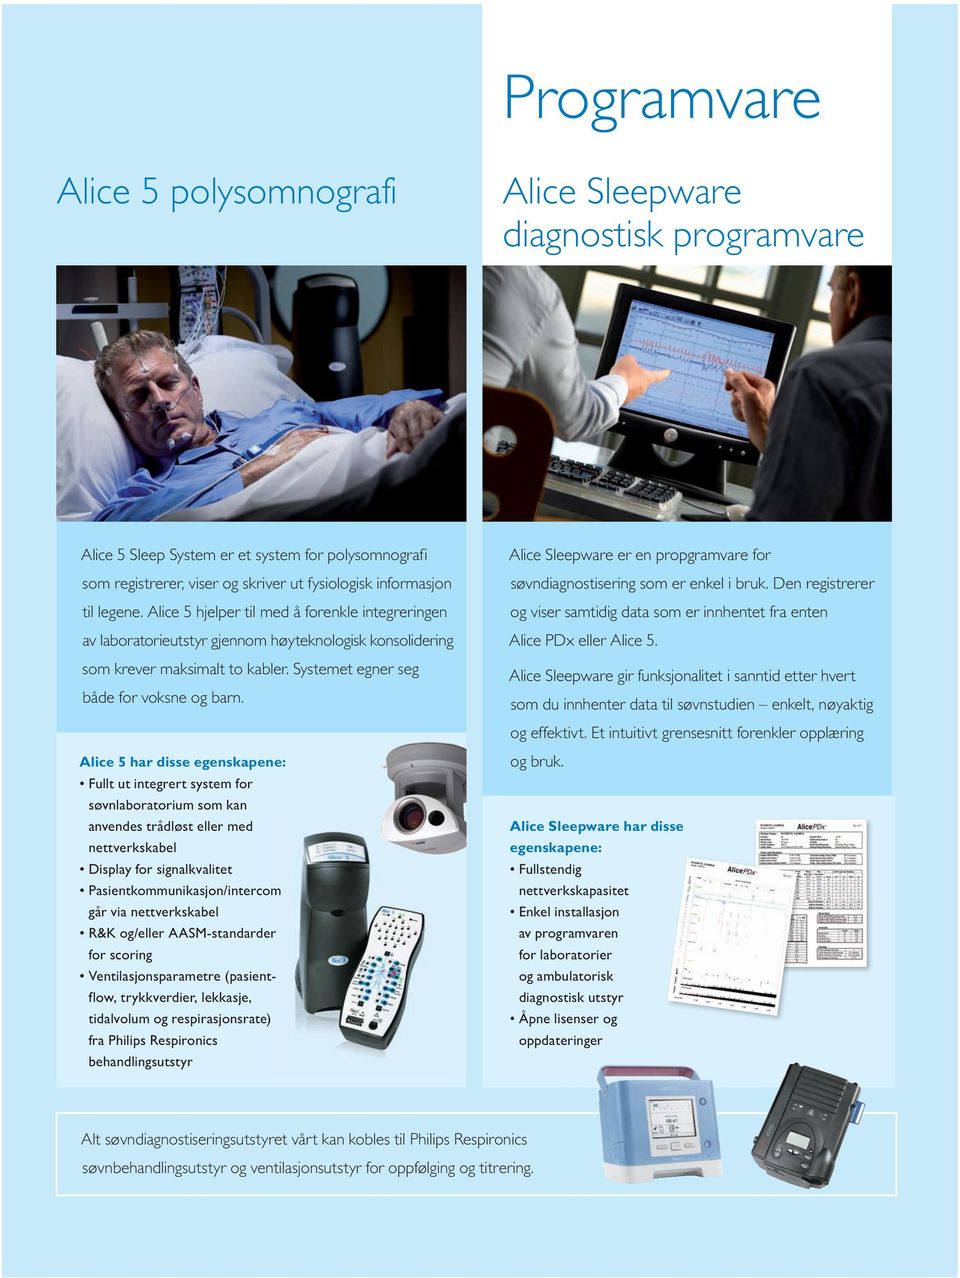 Alice 5 har disse egenskapene: Fullt ut integrert system for søvnlaboratorium som kan anvendes trådløst eller med nettverkskabel Display for signalkvalitet Pasientkommunikasjon/intercom går via